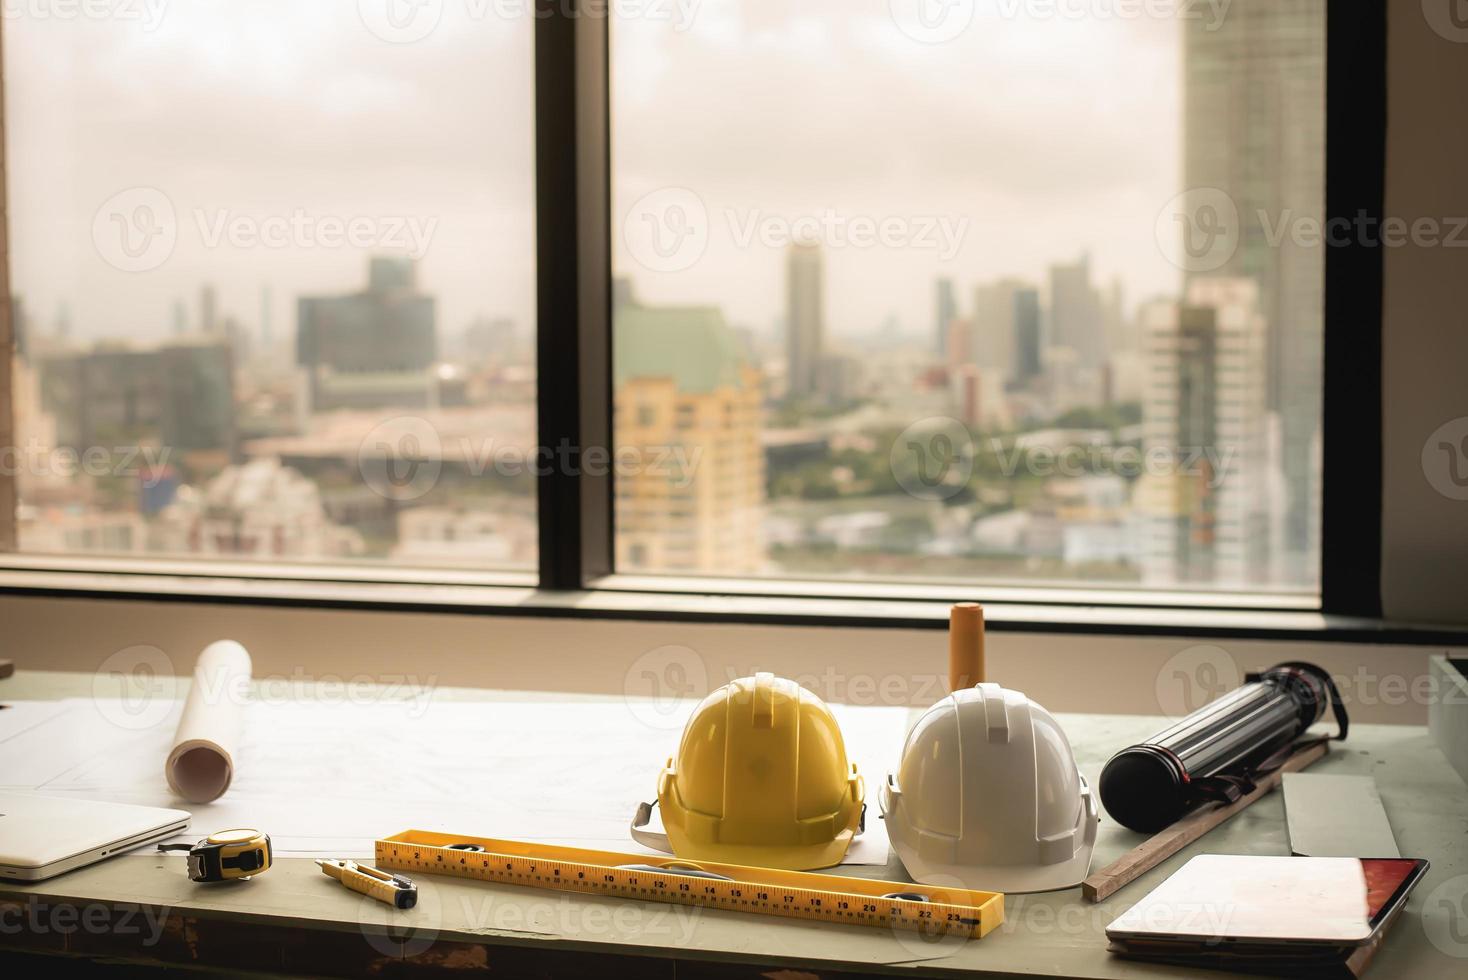 capacete, tablet, laptop, rolo de planta ou plano arquitetônico, régua, instrumento de medição na mesa do trabalhador da equipe de construção e um prédio alto ao fundo. foto